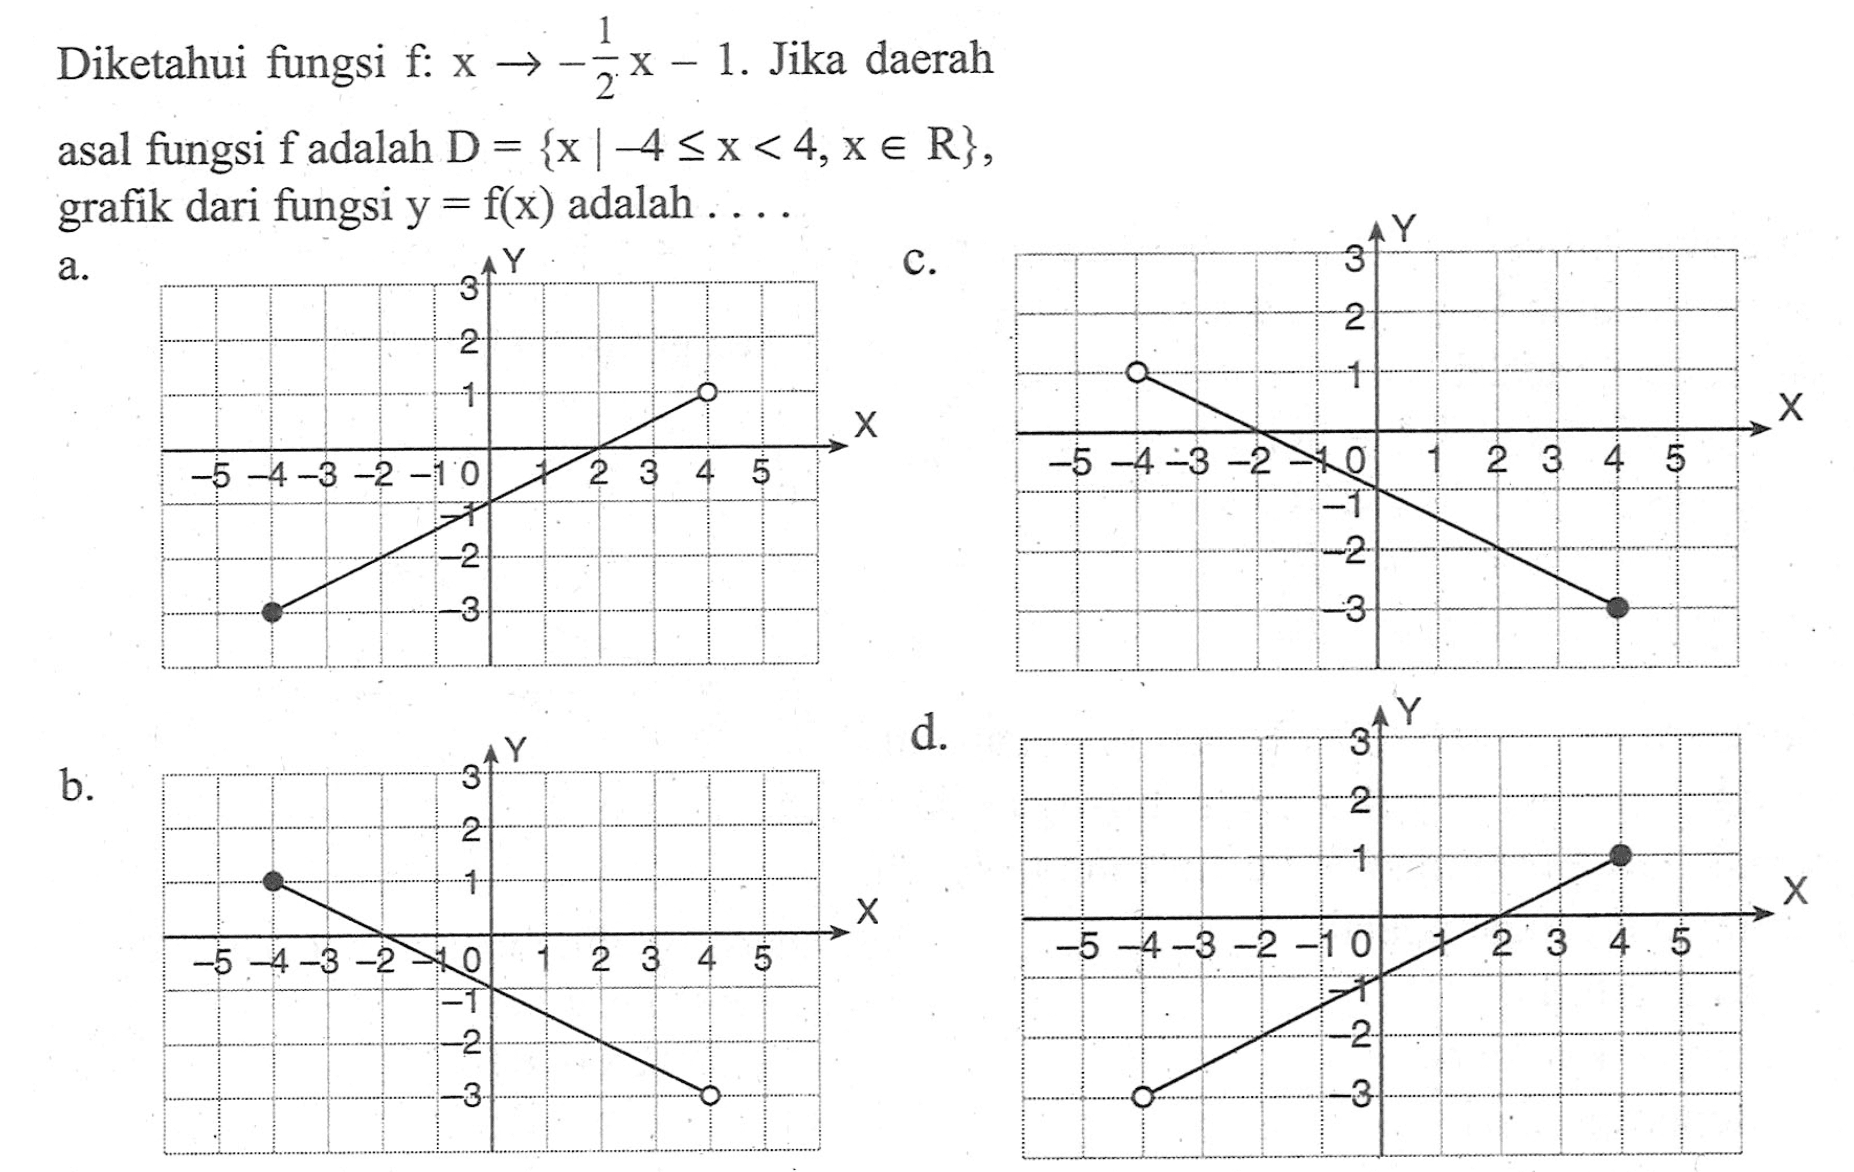 Diketahui fungsi f: x -> -1/2 x - 1. Jika daerah asal fungsi f adalah D = {x | -4 <= x < 4, x e R}, grafik dari fungsi y = f(x) adalah...